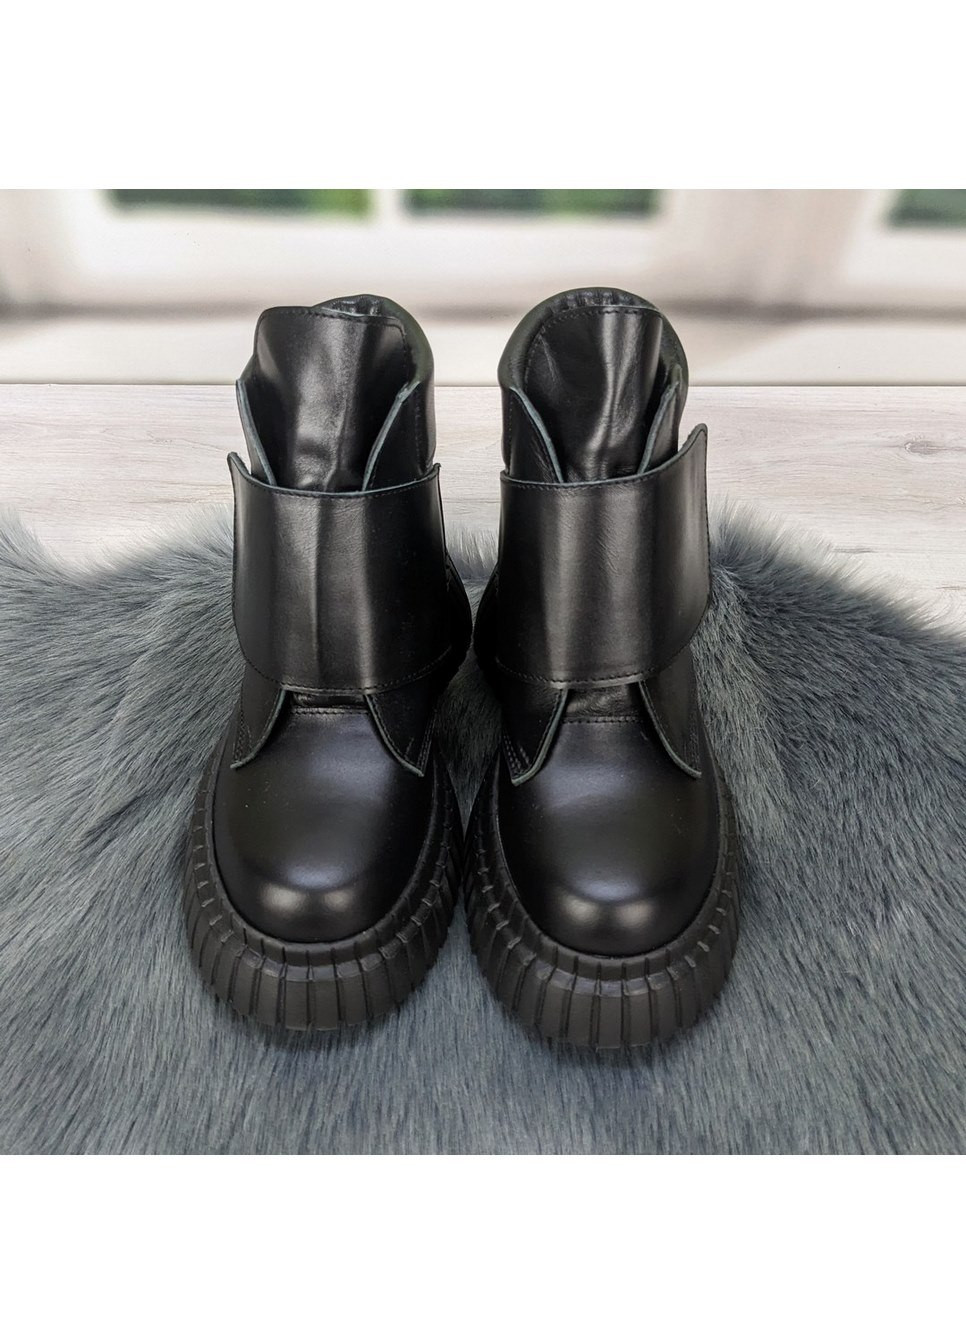 Зимние ботинки женские зимние черные кожаные на платформе Ailinda